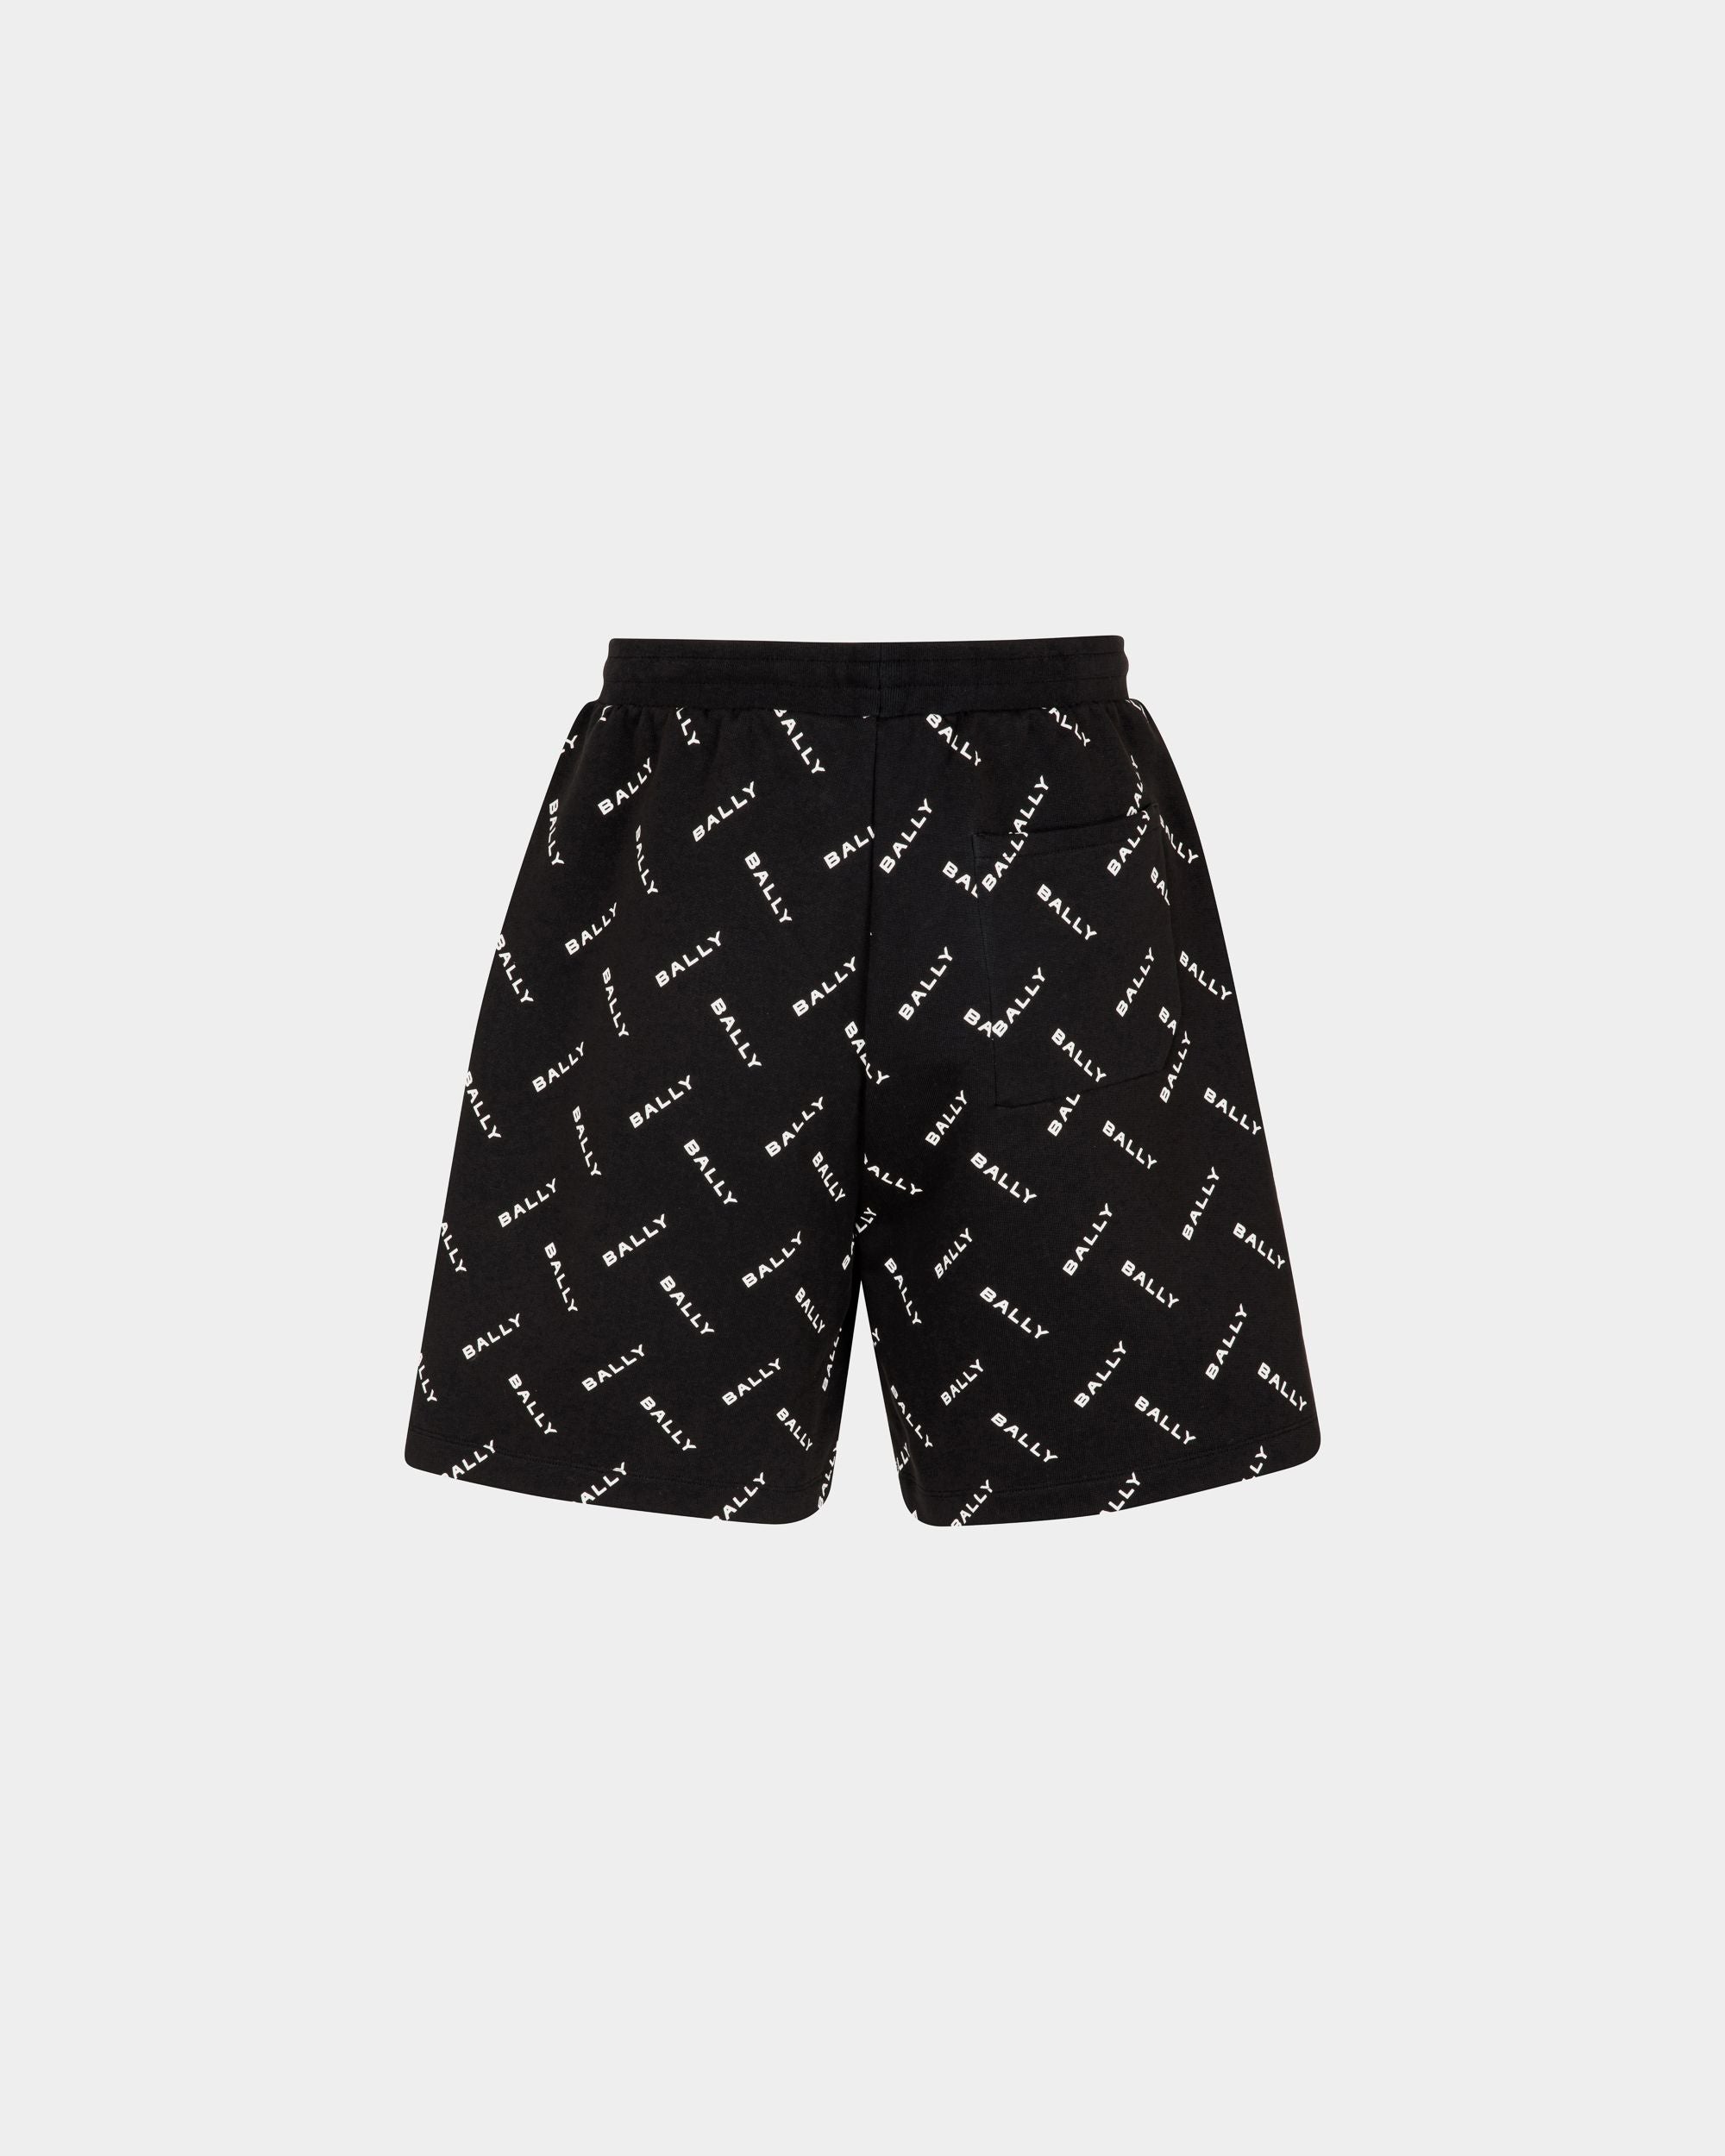 Herren-Shorts aus dunkelblauer Baumwolle | Bally | Still Life Rückseite